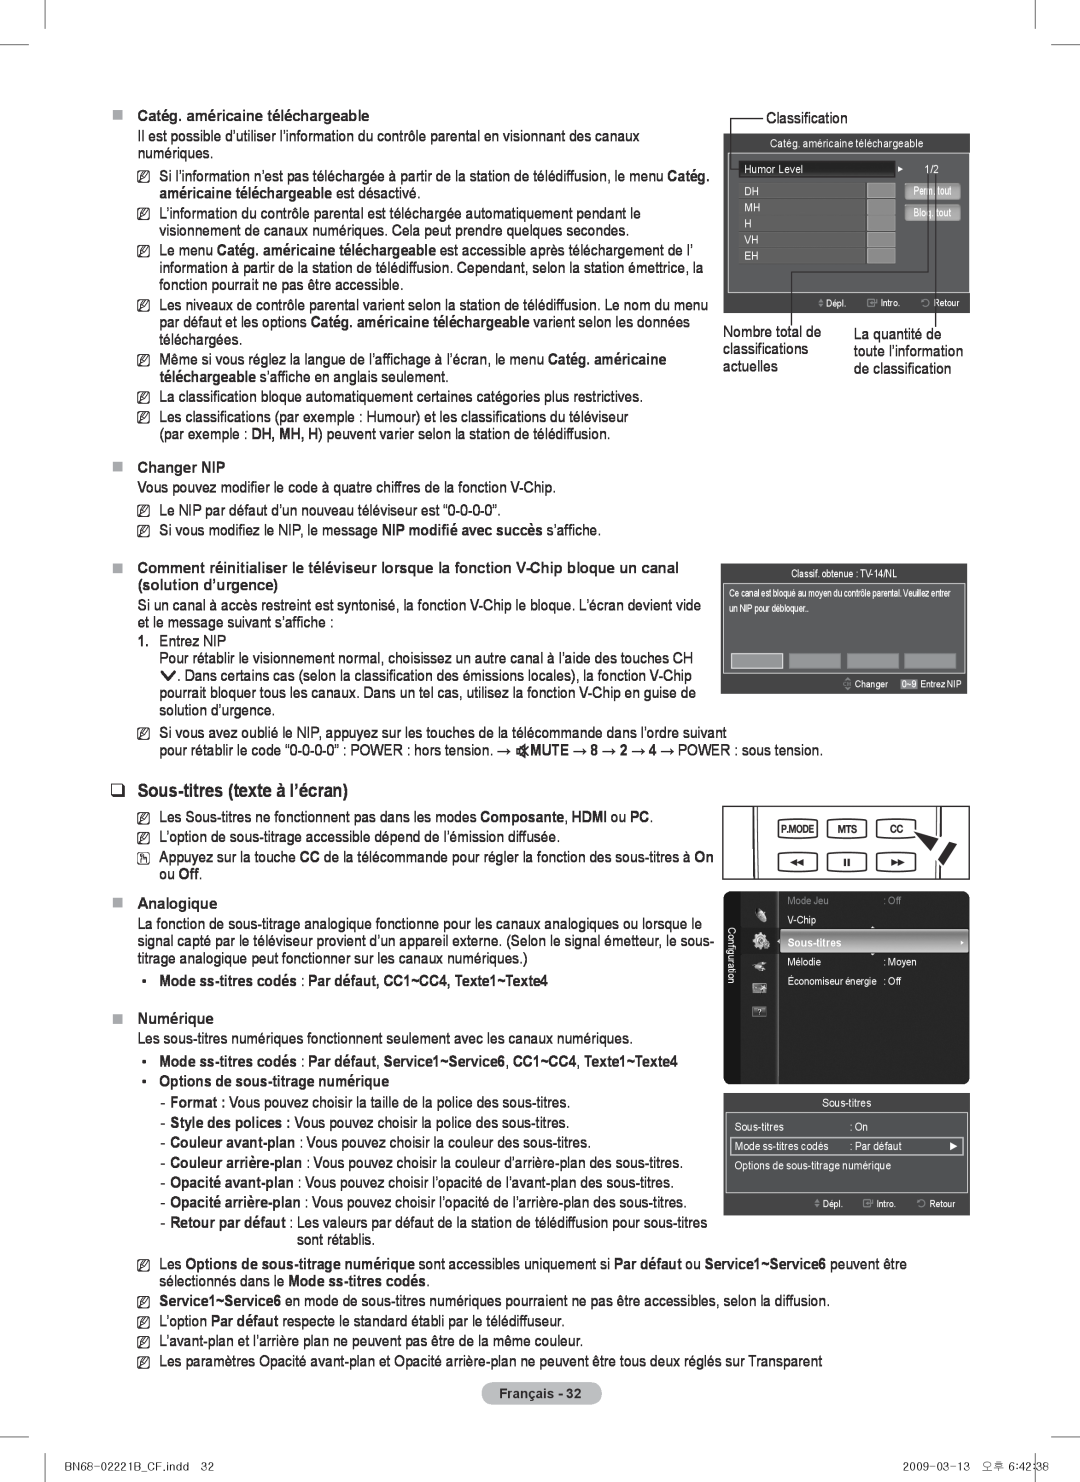 Samsung PN6B590T5F Sous-titres texte à l’écran,  Catég. américaine téléchargeable,  Changer NIP, solution d’urgence 